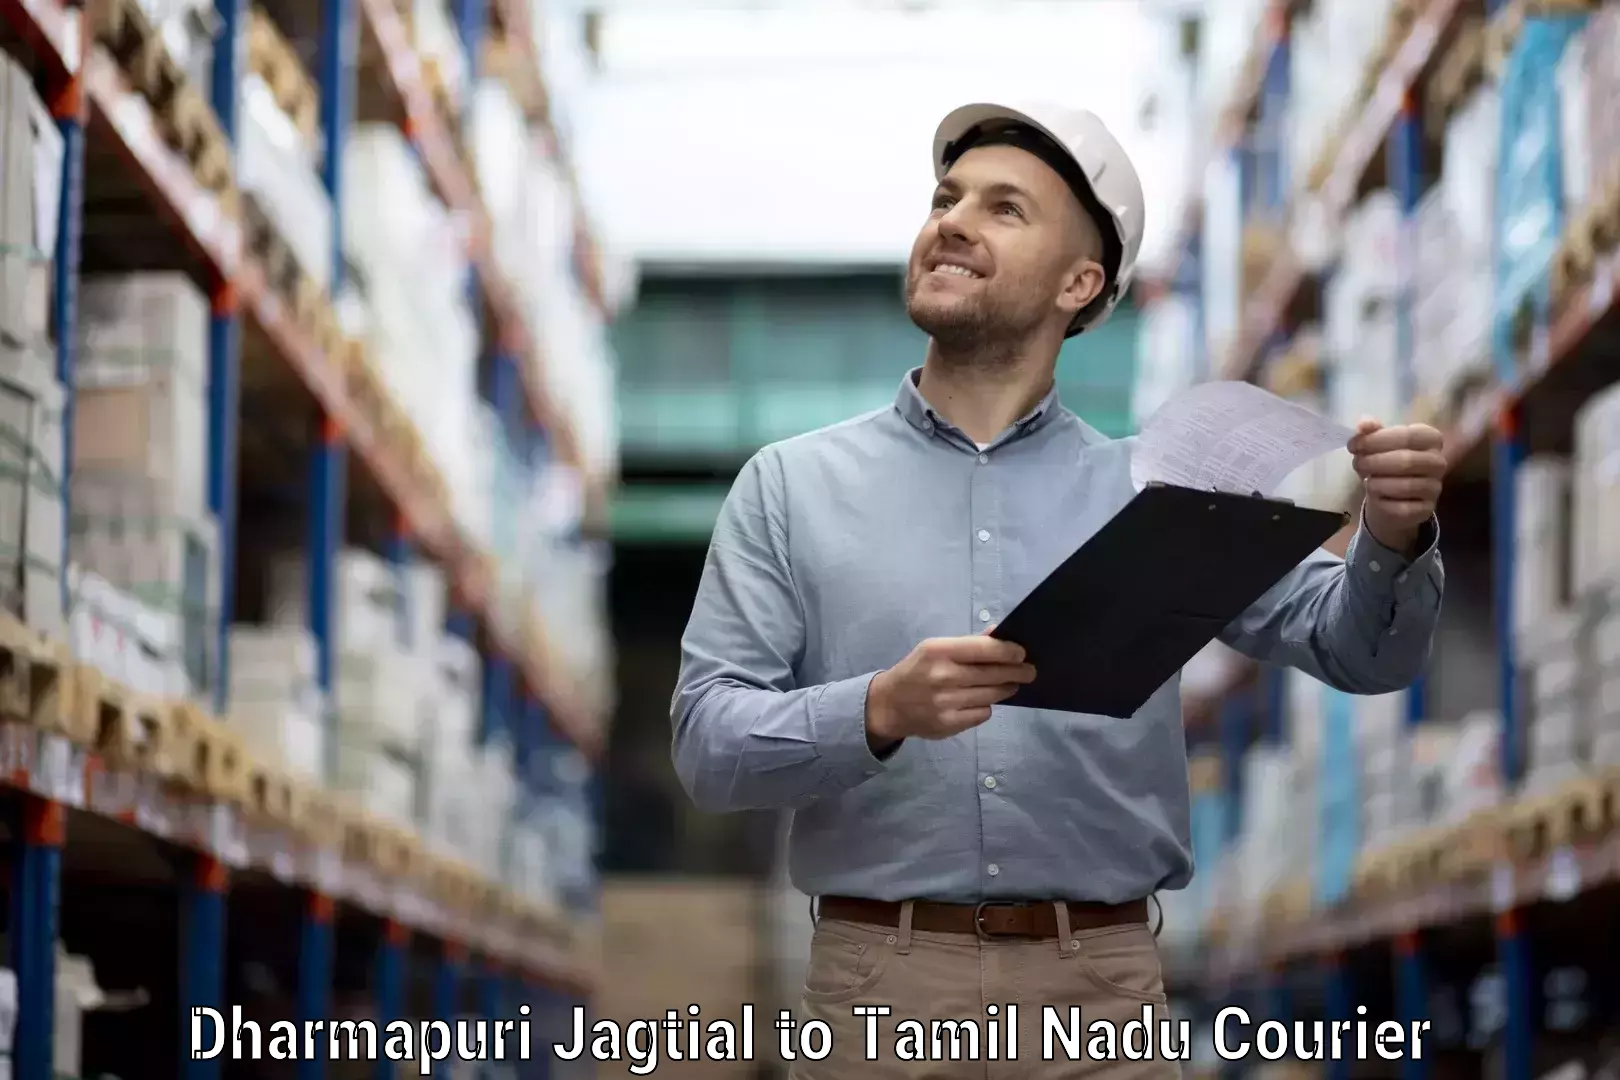 Nationwide shipping services Dharmapuri Jagtial to Paramakudi